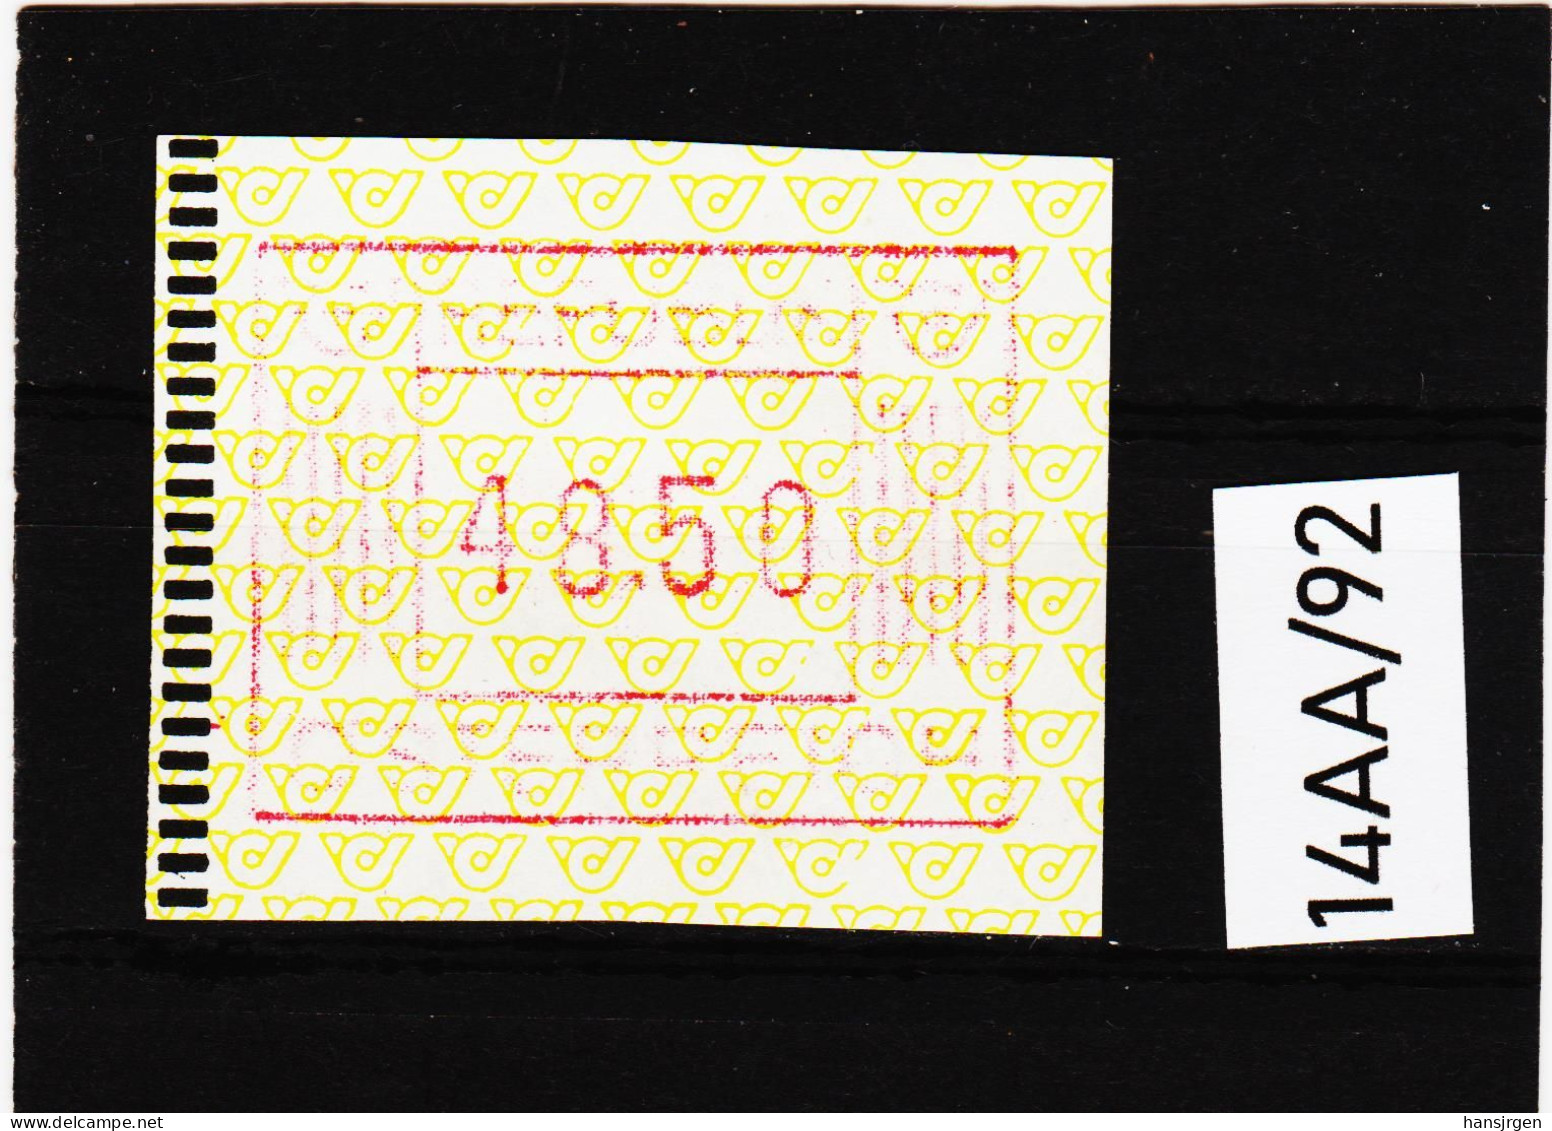 14AA/92  ÖSTERREICH 1983 AUTOMATENMARKEN 1. AUSGABE  48,50 SCHILLING   ** Postfrisch - Vignette [ATM]